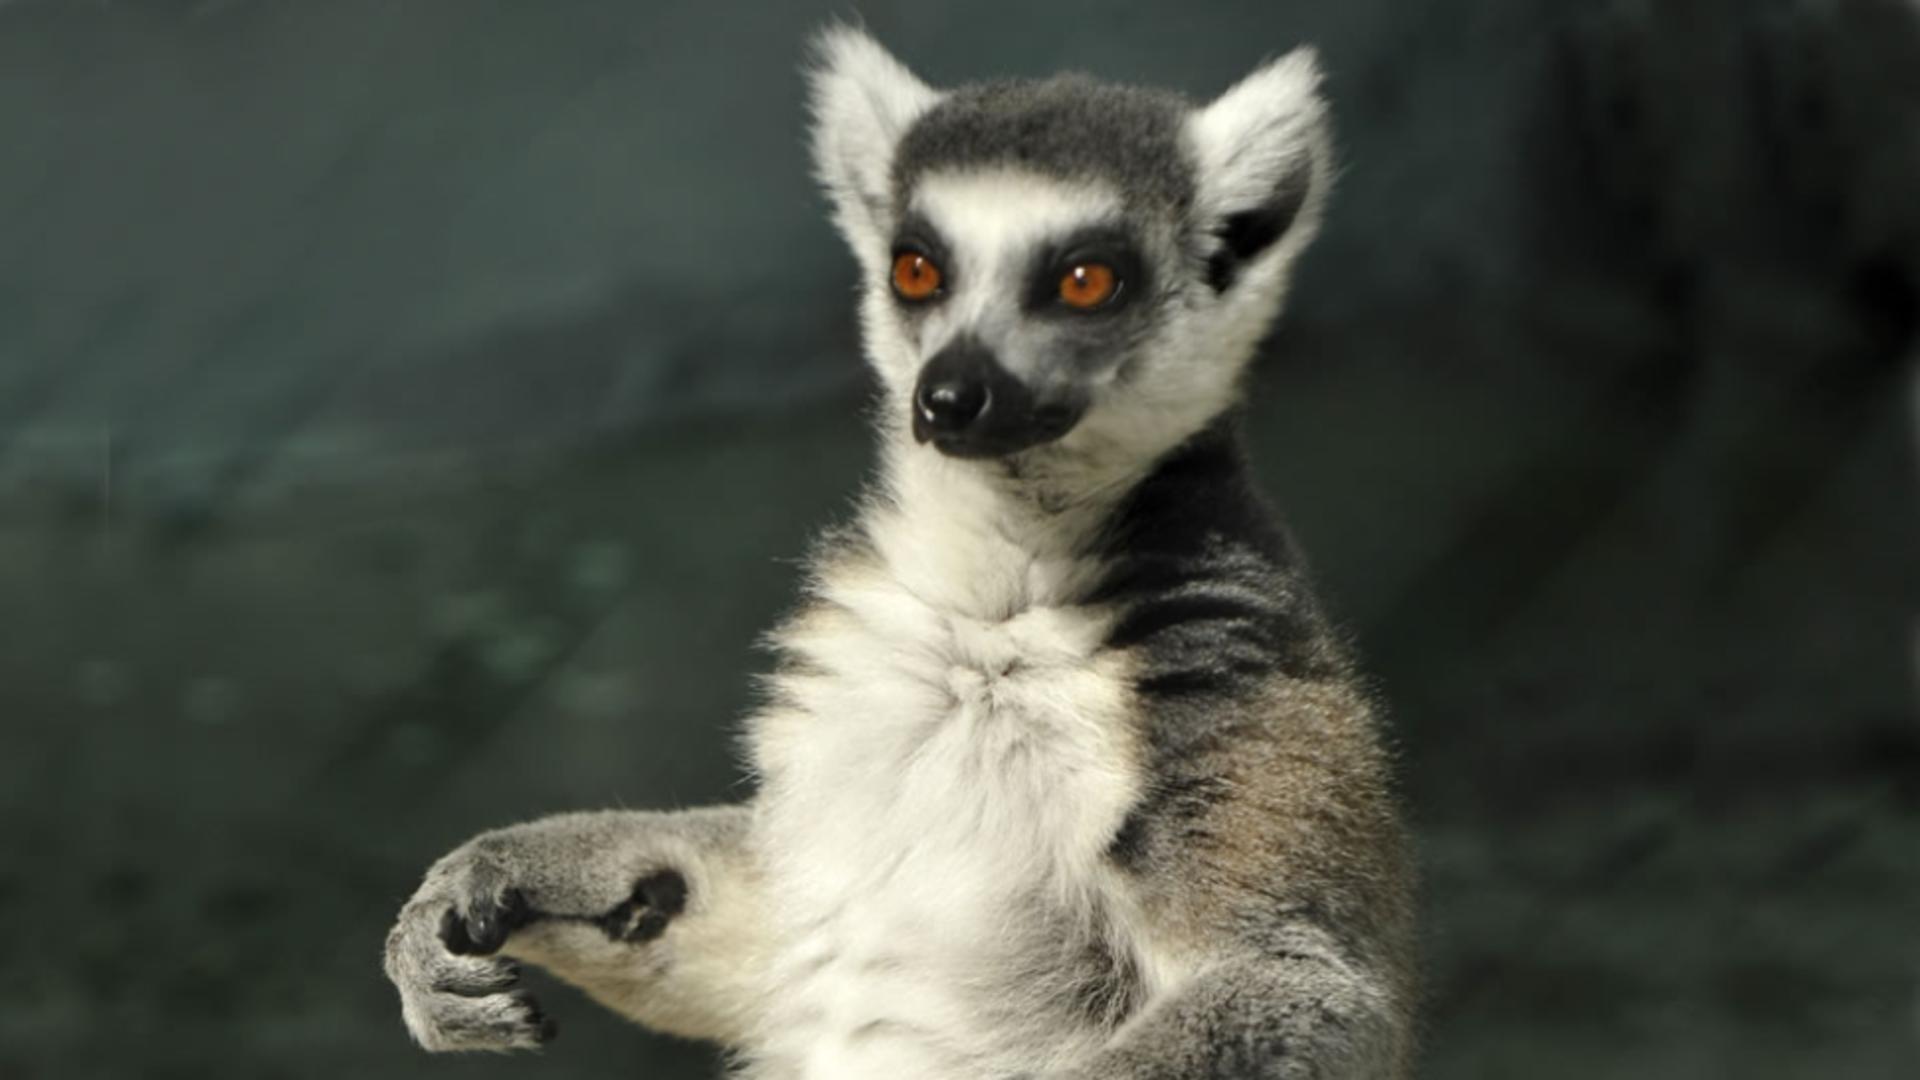 Lemur - imagine de arhivă